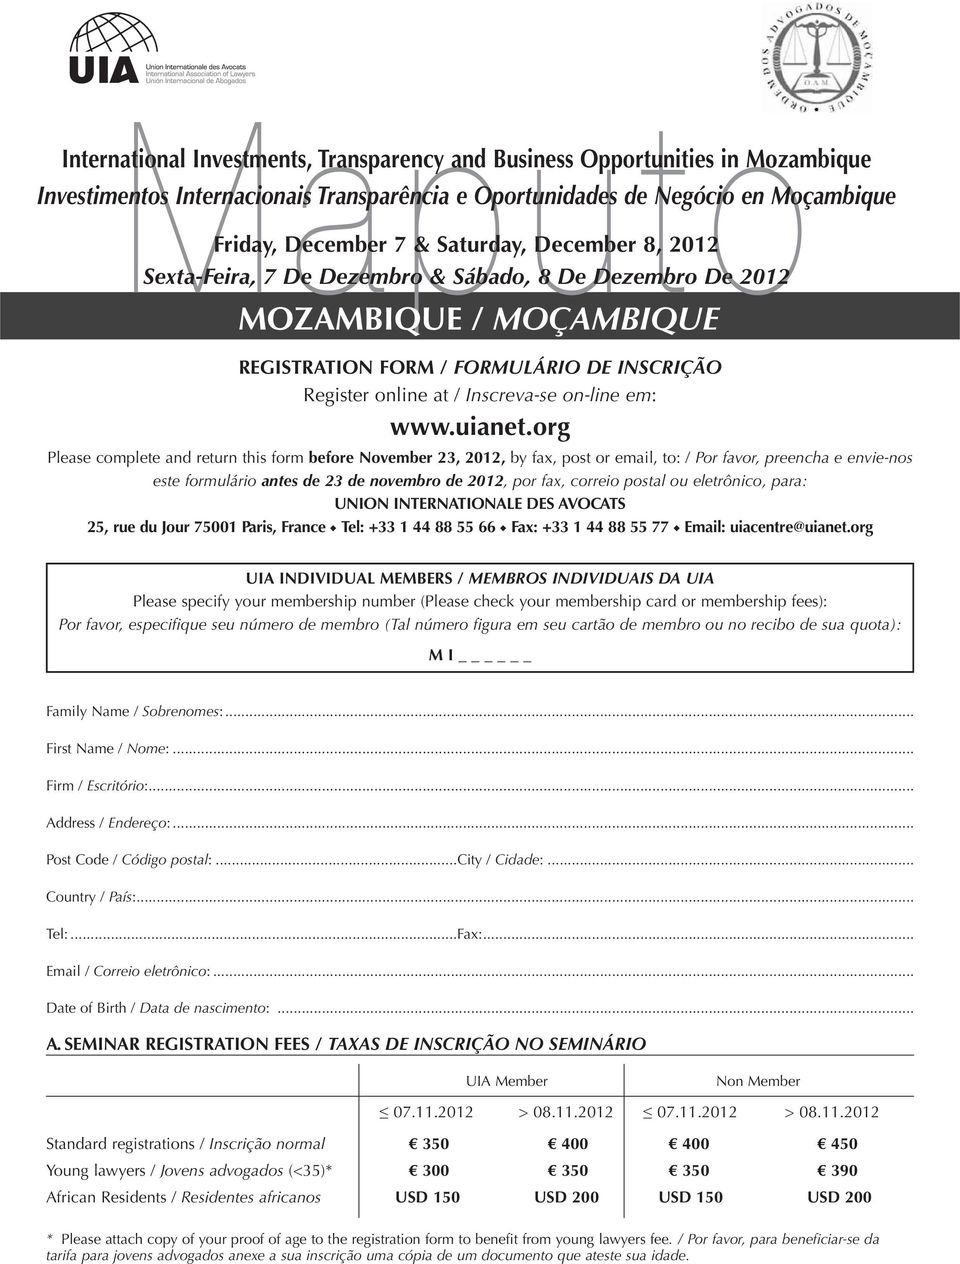 org Please complete and return this form before November 23, 2012, by fax, post or email, to: / Por favor, preencha e envie-nos este formulário antes de 23 de novembro de 2012, por fax, correio